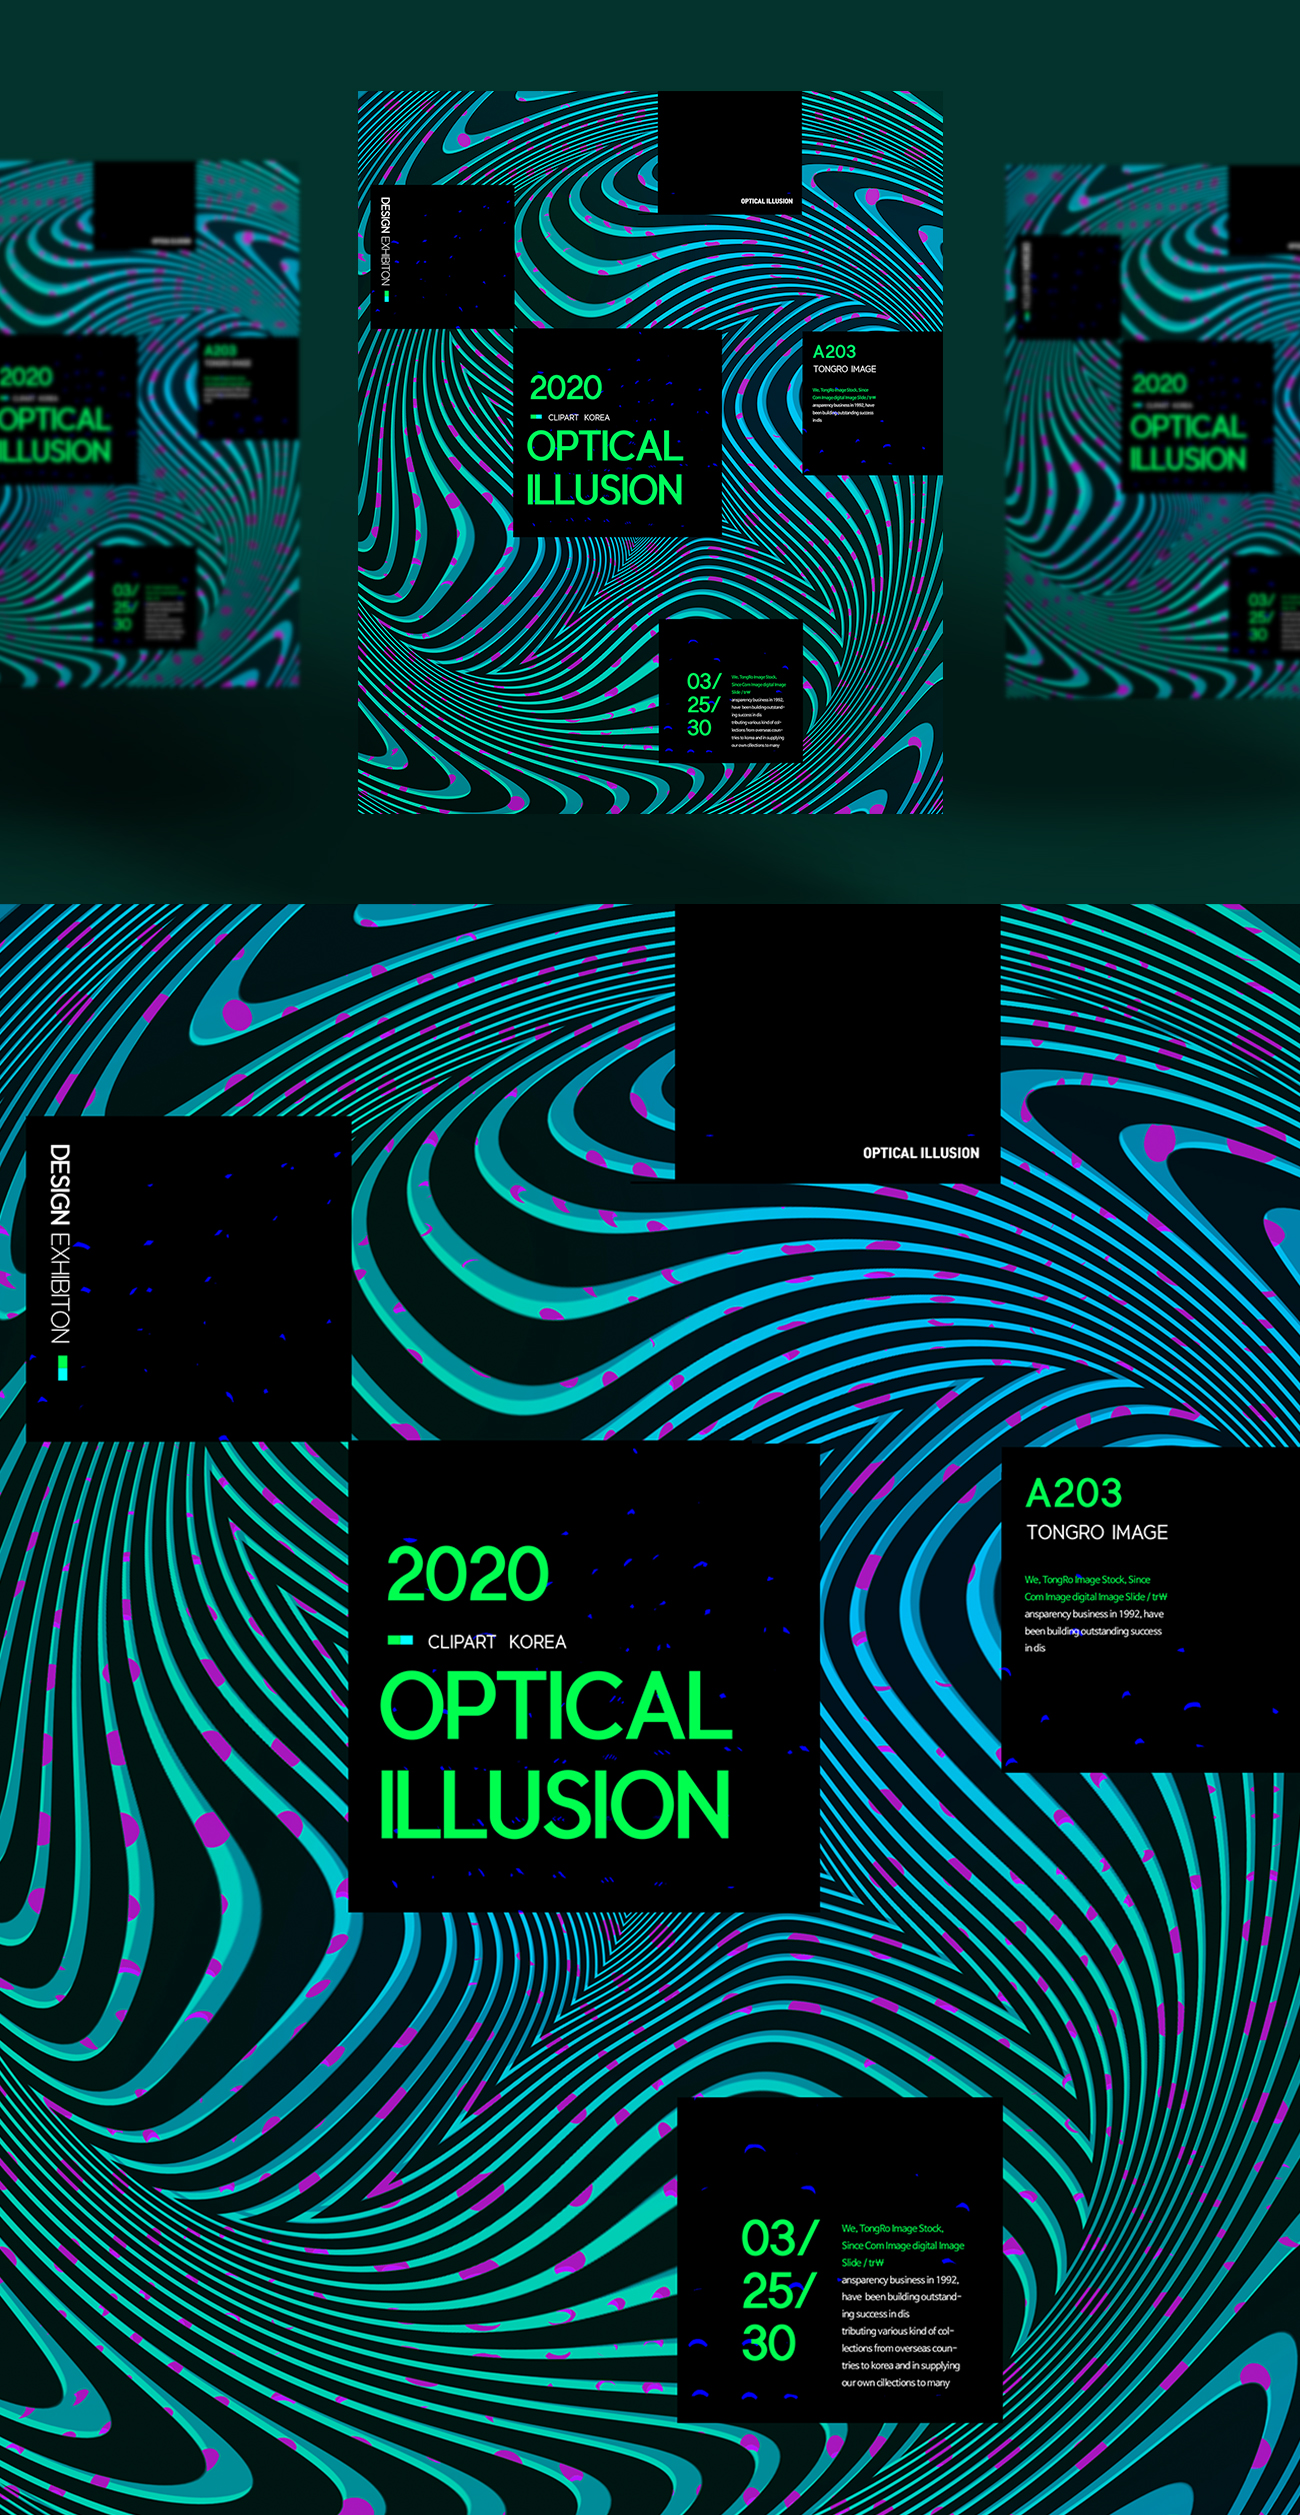 斑马形状2020年错觉抽象几何弯曲形状社交媒体海报设计模板